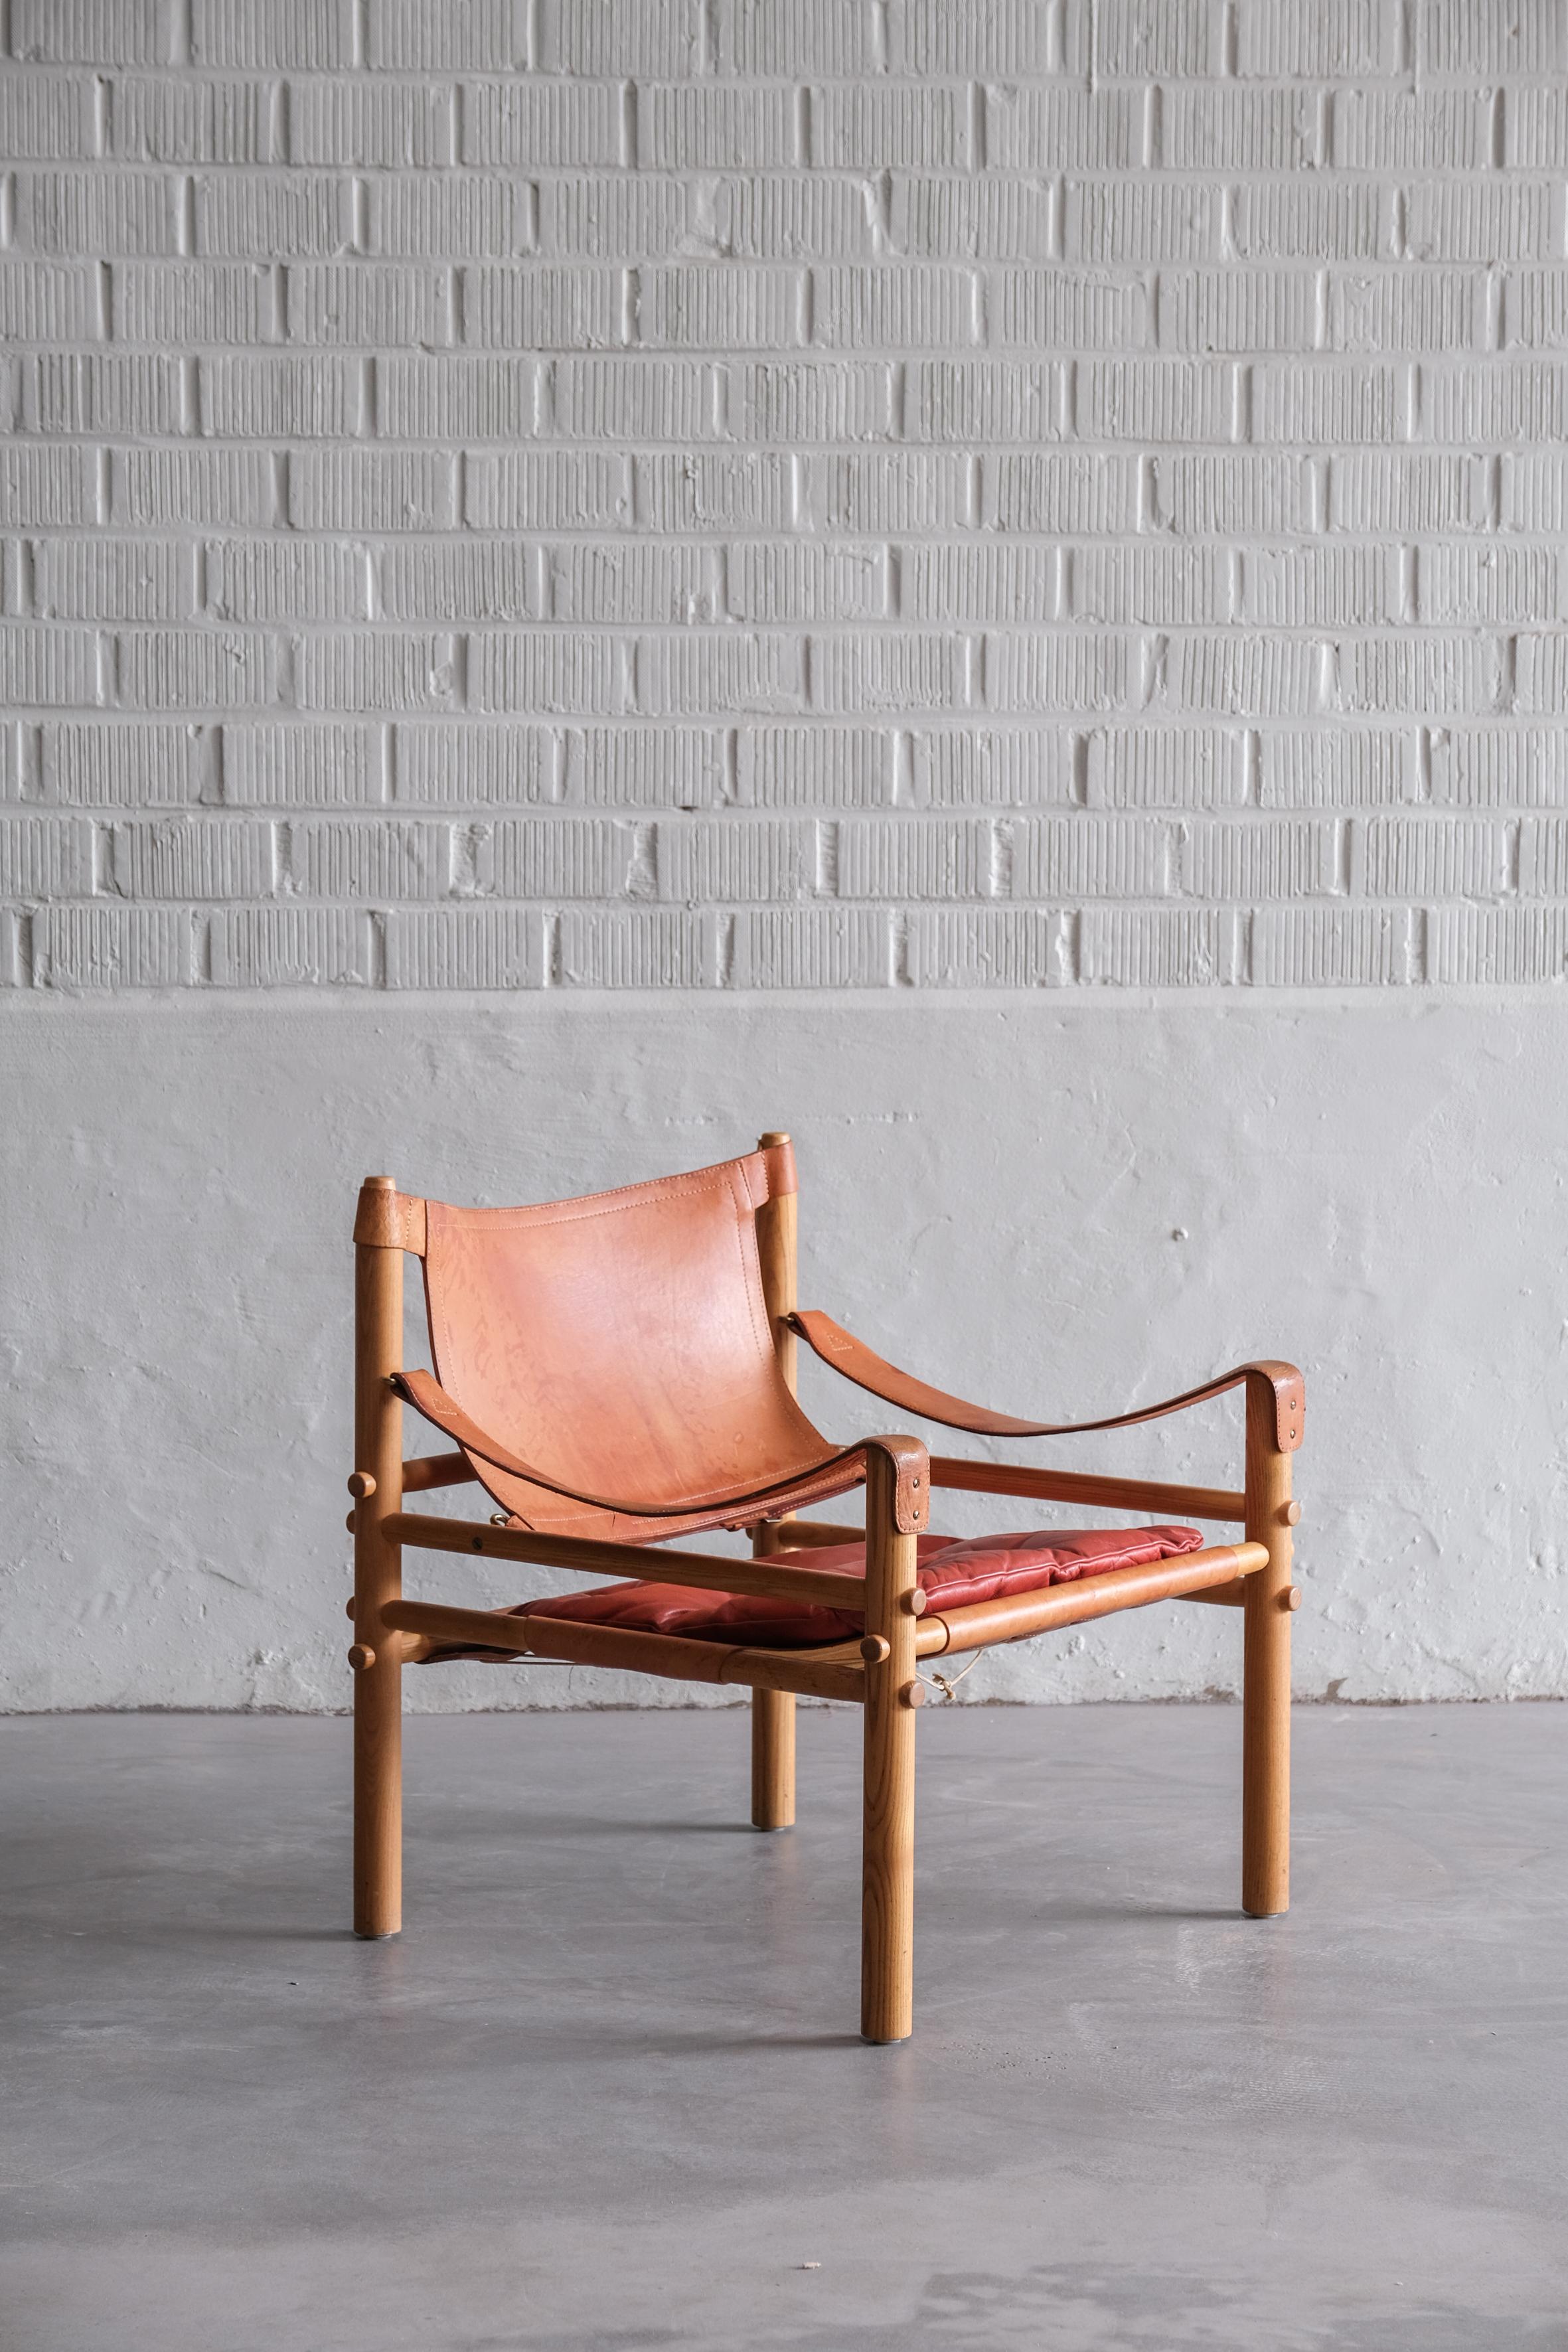 Original Safari-Stuhl von Arne Norell aus Holz und Leder.
schöne Patina auf dem Leder. 